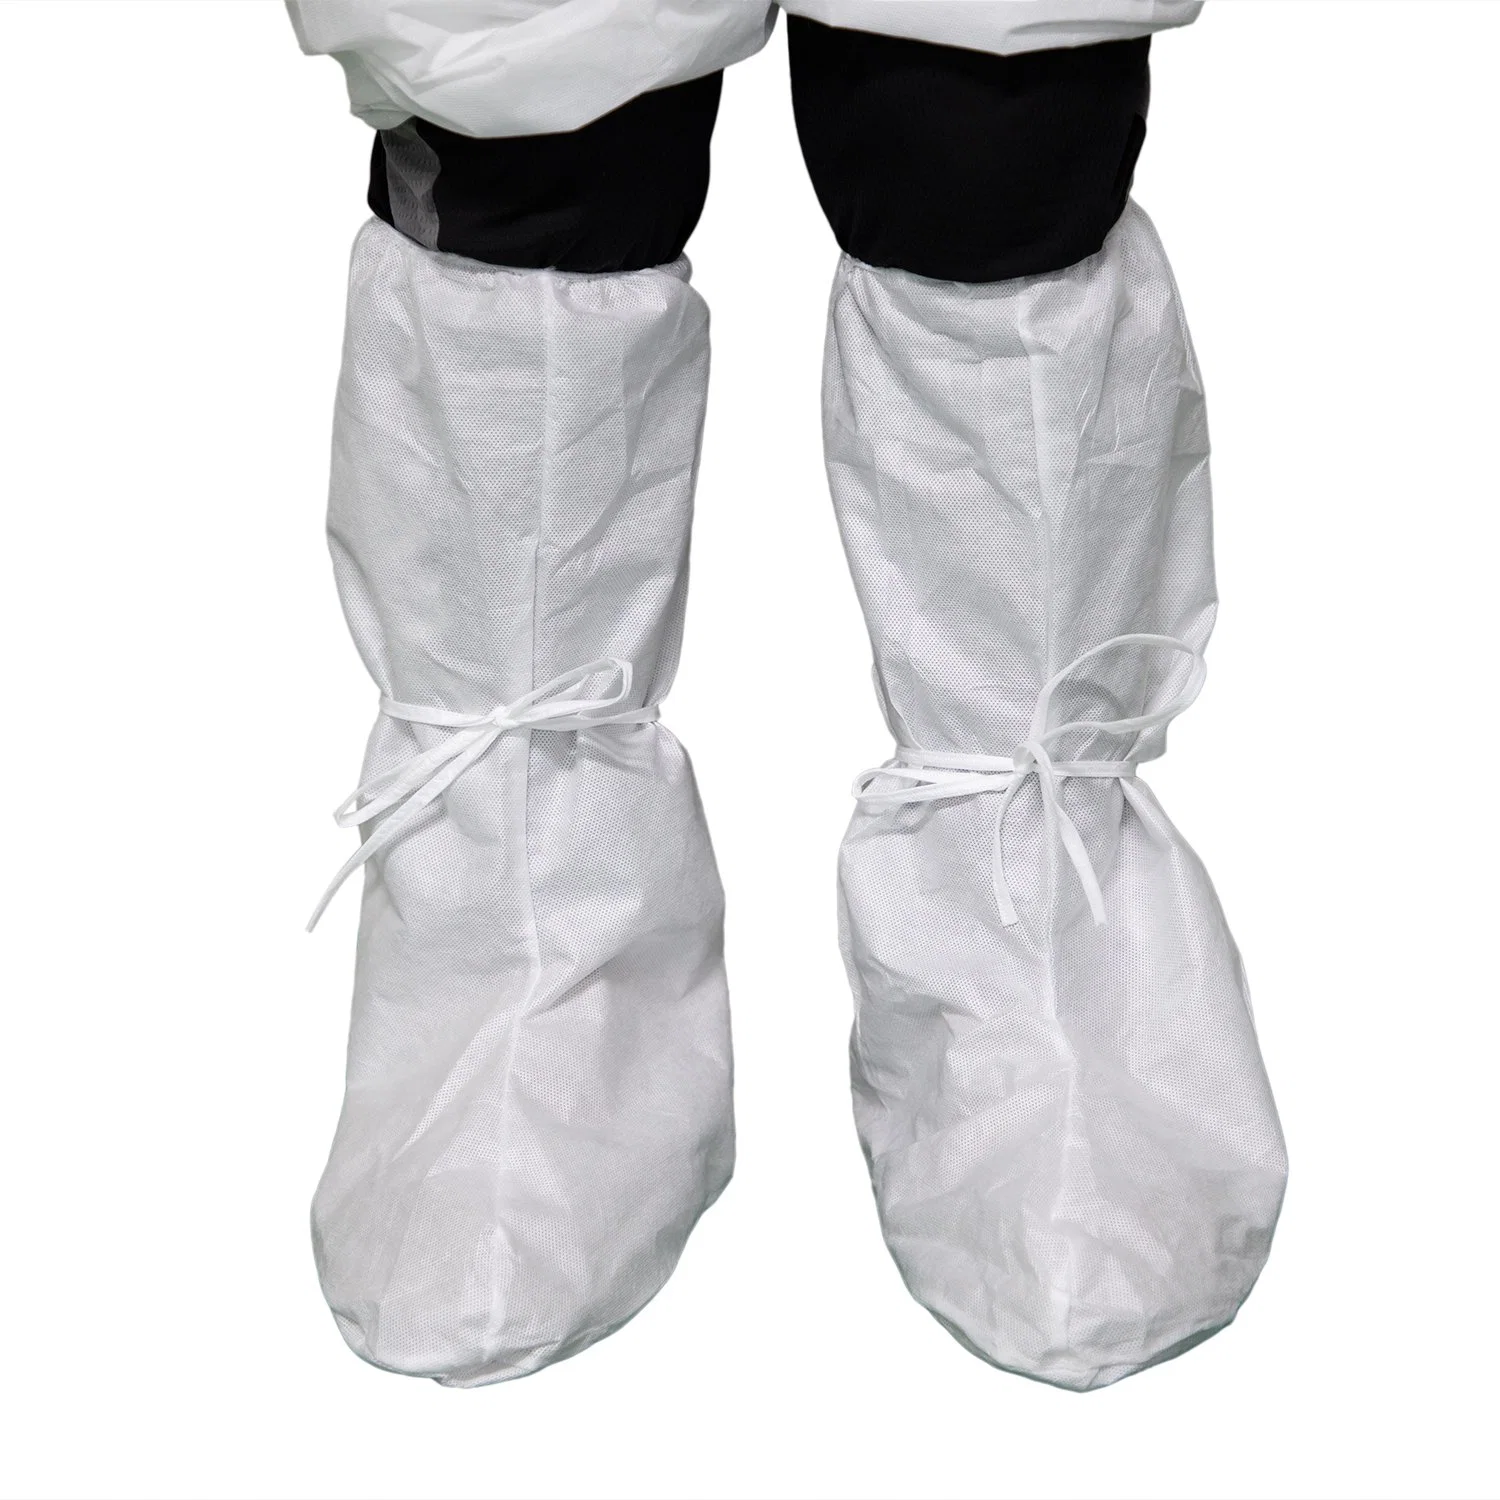 Seguridad Protección aislamiento impermeable cubierta de zapatos médicos Cirugía funda desechable Cubierta